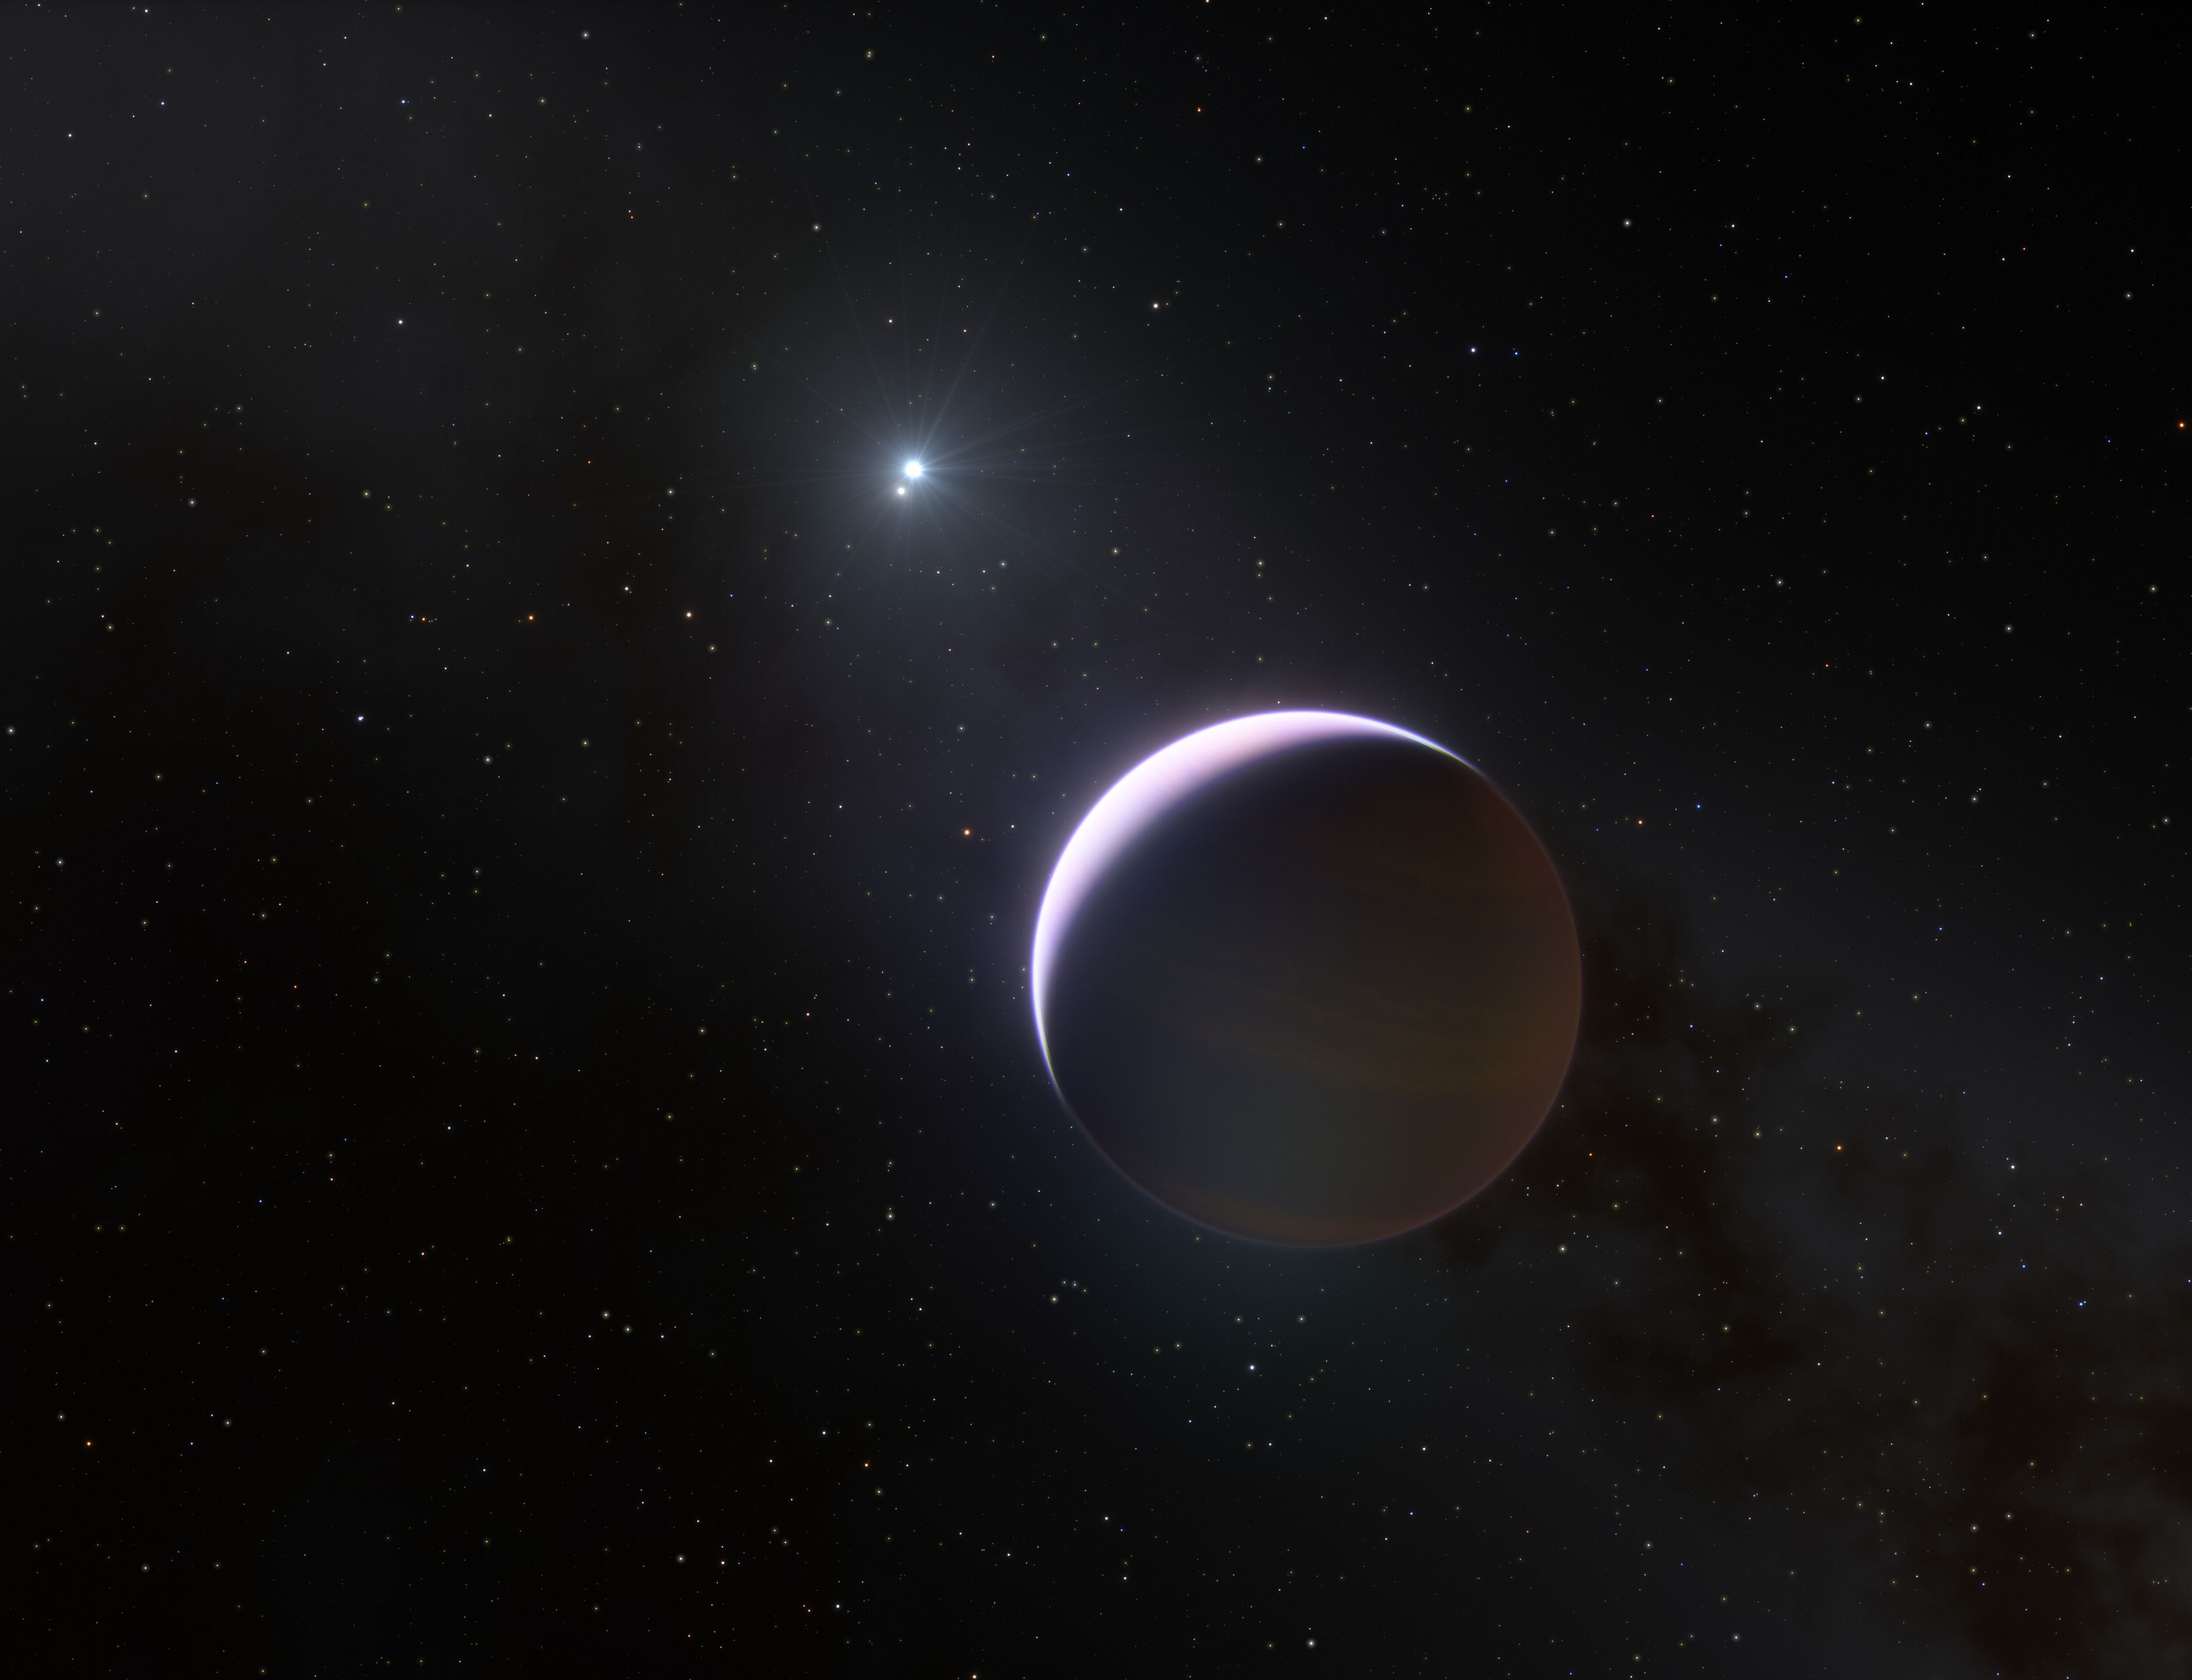 Representación artística del planeta b Centauri b orbitando el sistema solar.